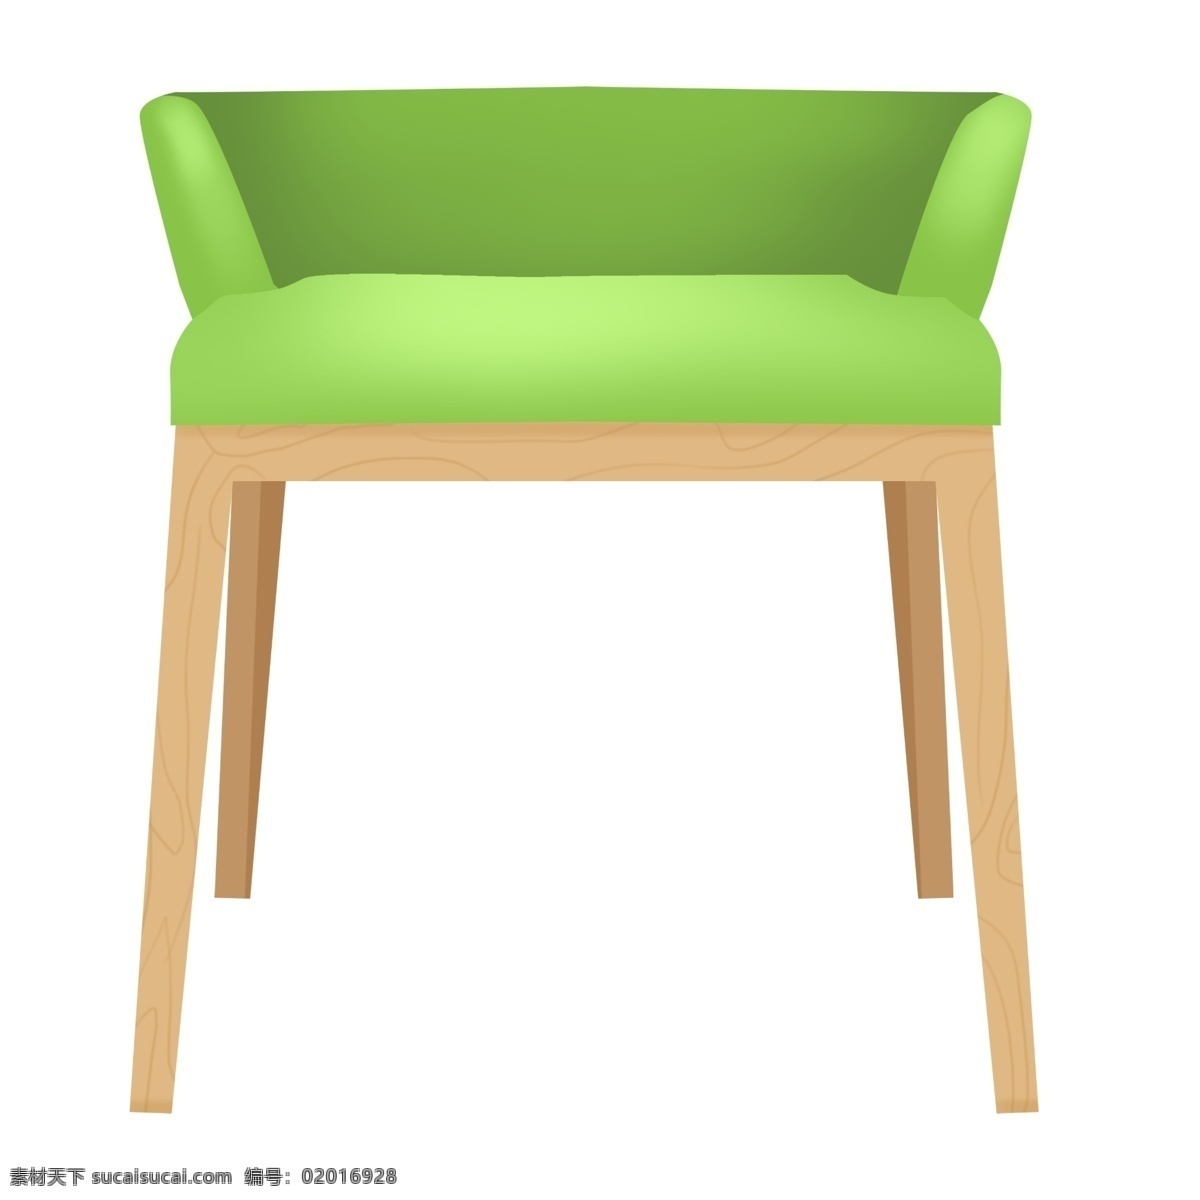 木头 椅子 装饰 插画 木头椅子 漂亮的椅子 绿色的椅子 创意椅子 立体椅子 卡通椅子 精美椅子